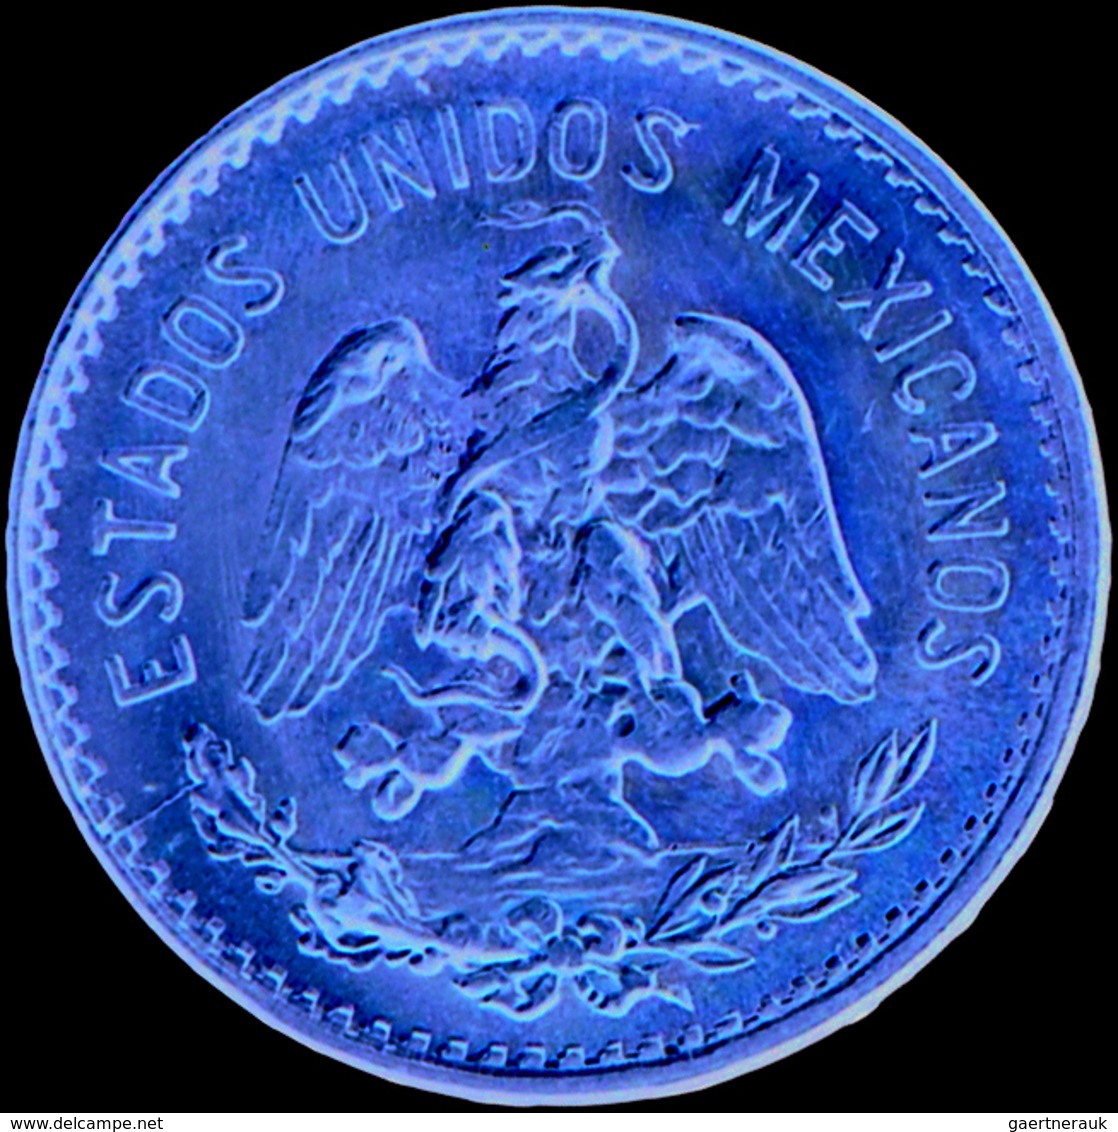 Mexiko - Anlagegold: Lot 7 Goldmünzen: Serie Goldmünzen mit folgenden Nominalen: 1 Peso 1865, 2 Peso